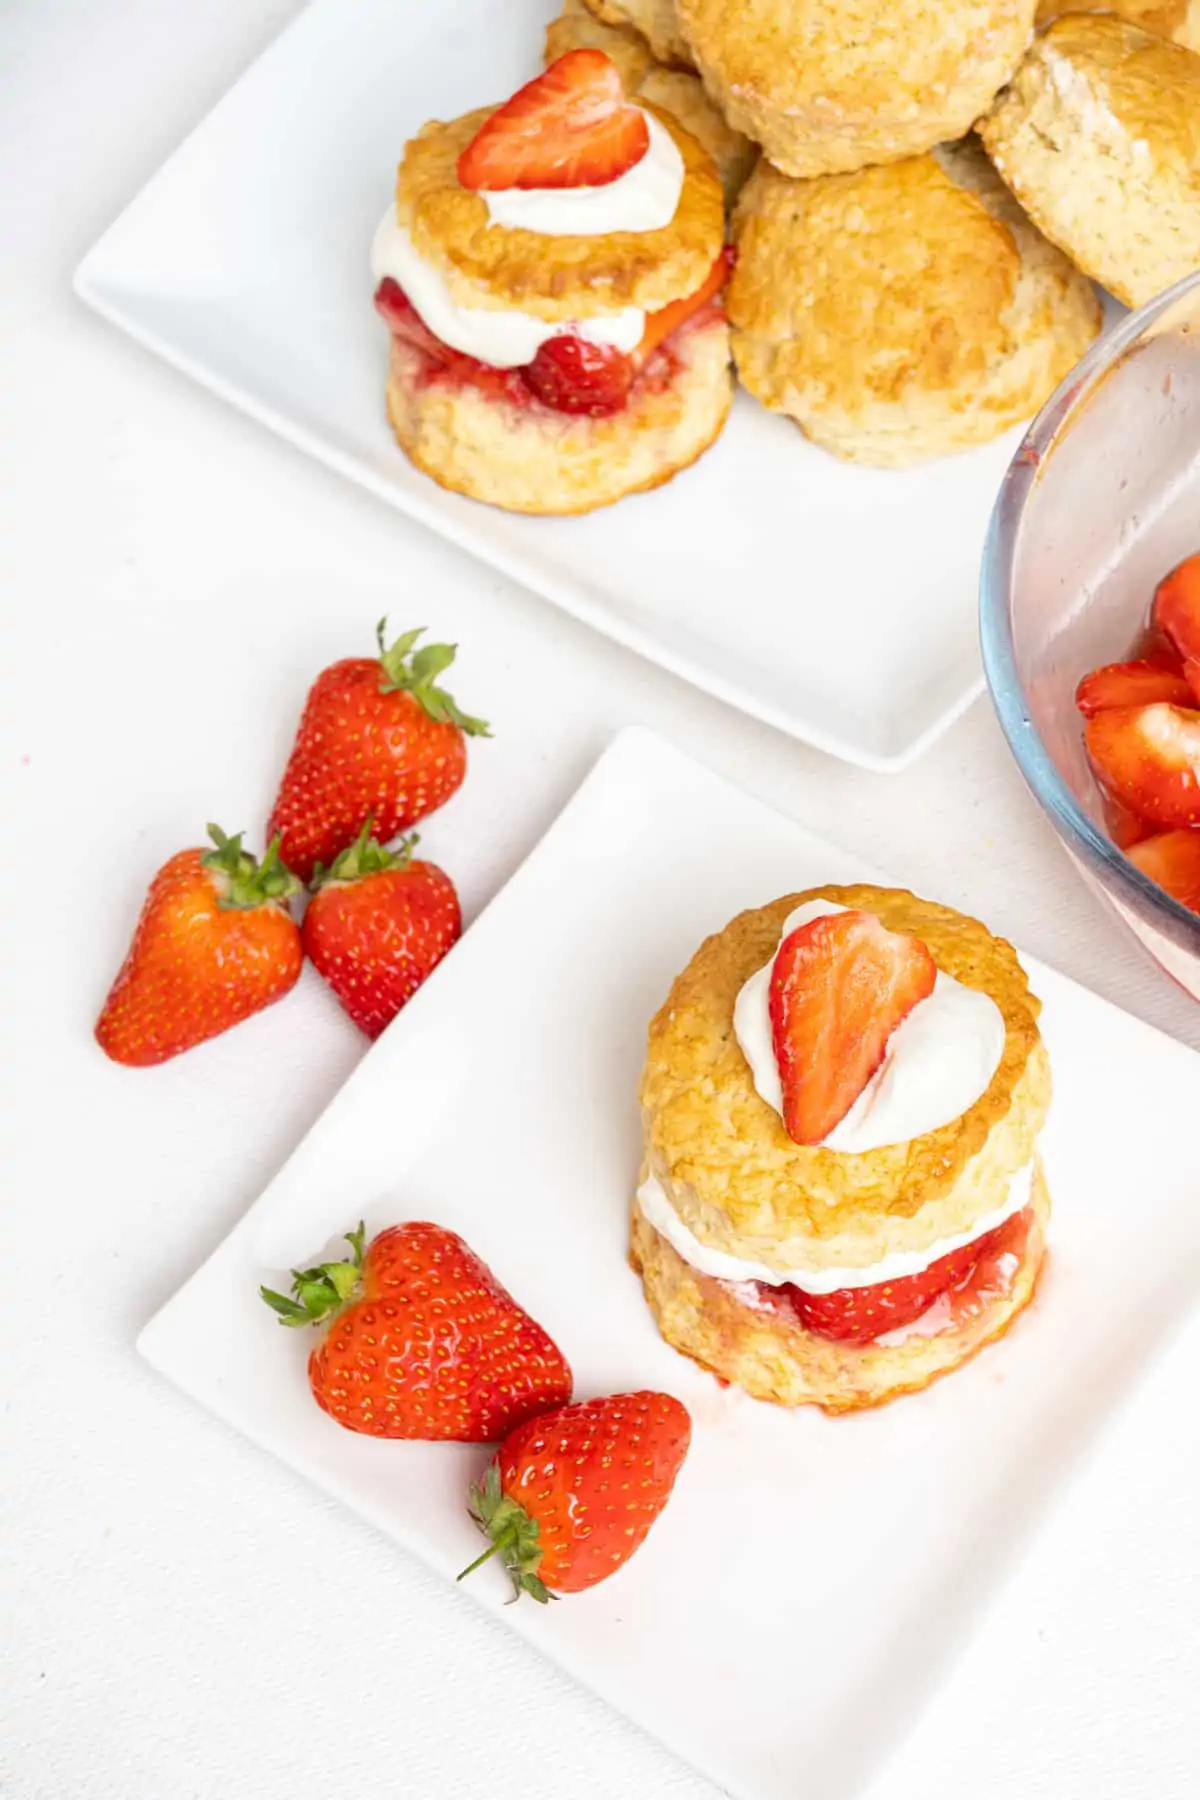 Ένα ψηλό μπισκότο με κρέμα και γέμιση φράουλας και επικάλυψη σε πιάτο με φρέσκες φράουλες.  Περισσότερα γλυκά σε πιατέλα σερβιρίσματος στο πίσω μέρος.